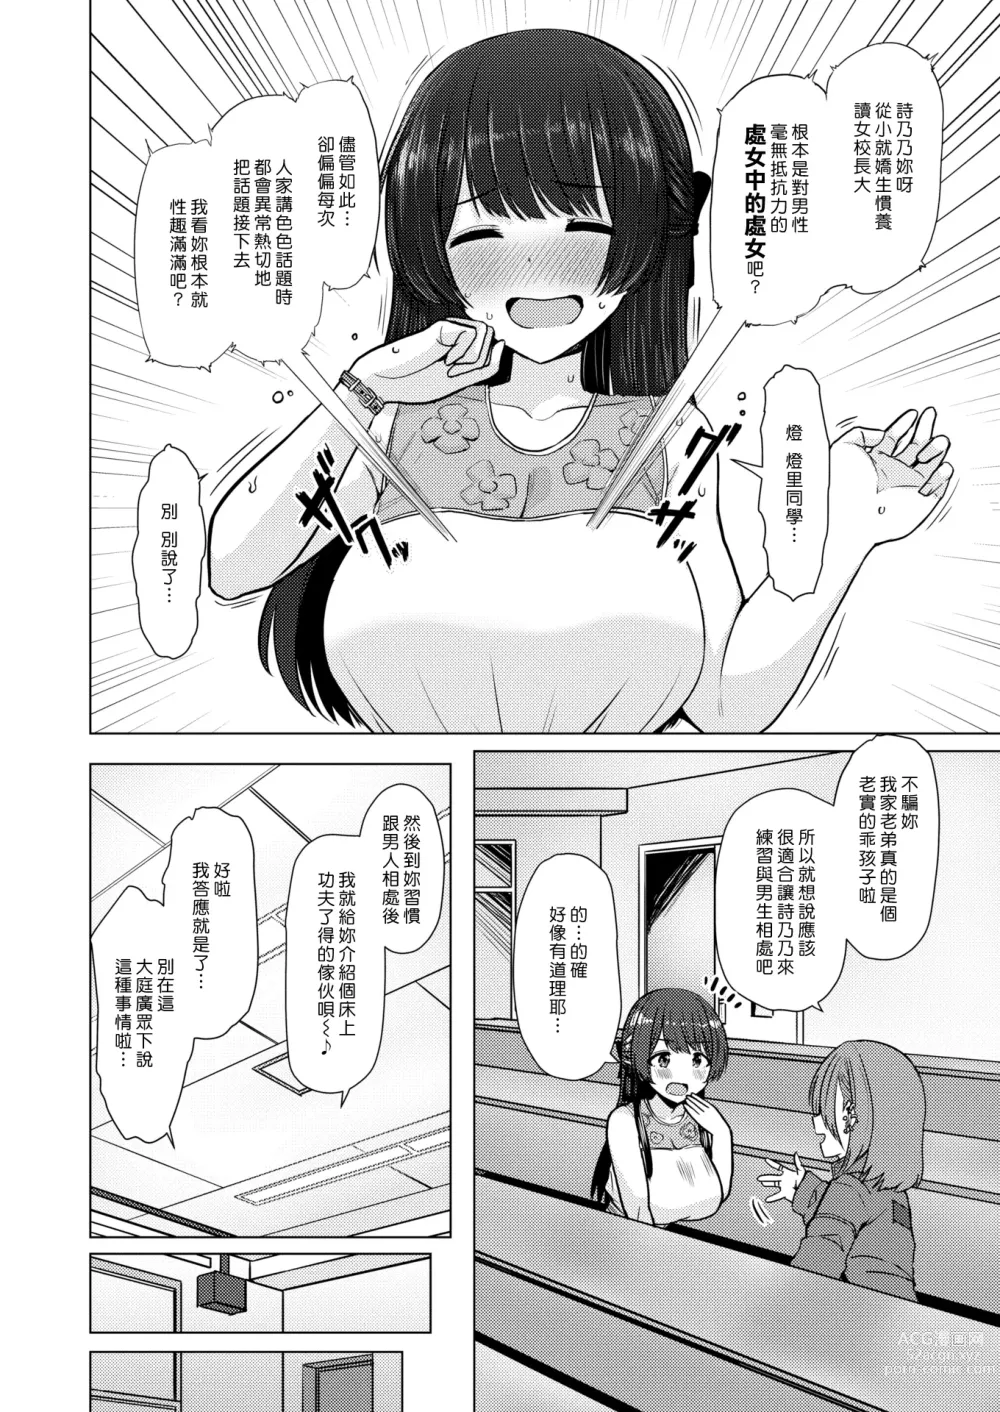 Page 2 of manga 小男孩大挑戰